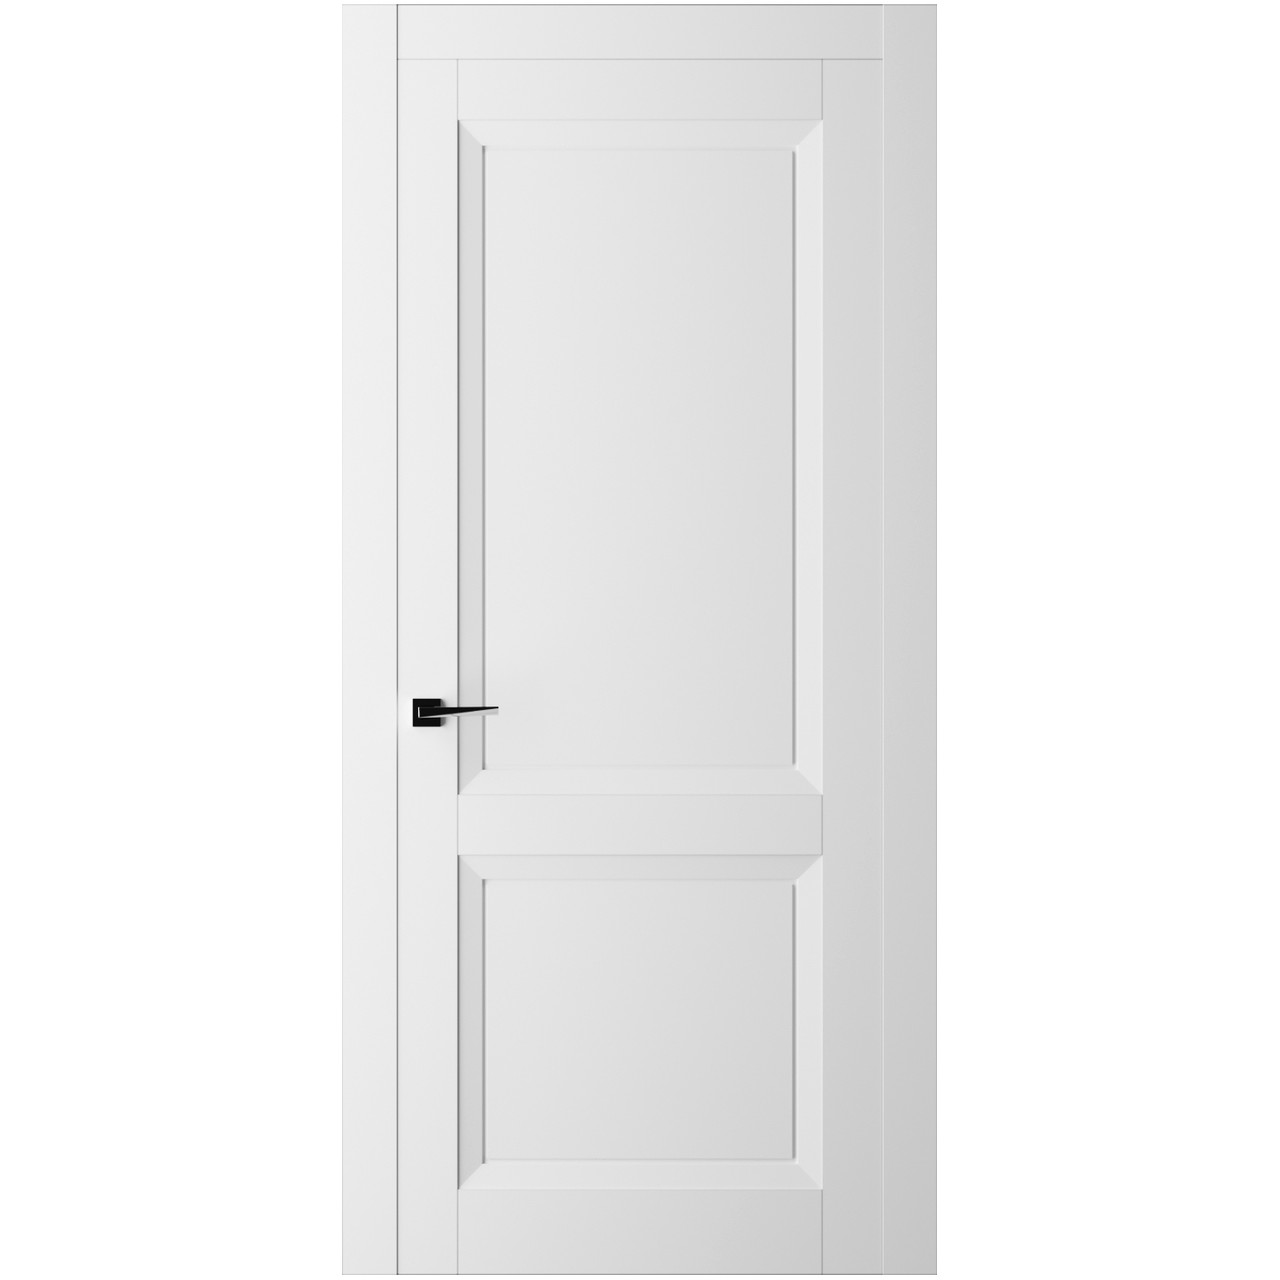 Дверь межкомнатная Ликорн Френч Кат ДКФКГ.2 2100*800*40мм (без замков и петель, с телескопической коробкой и